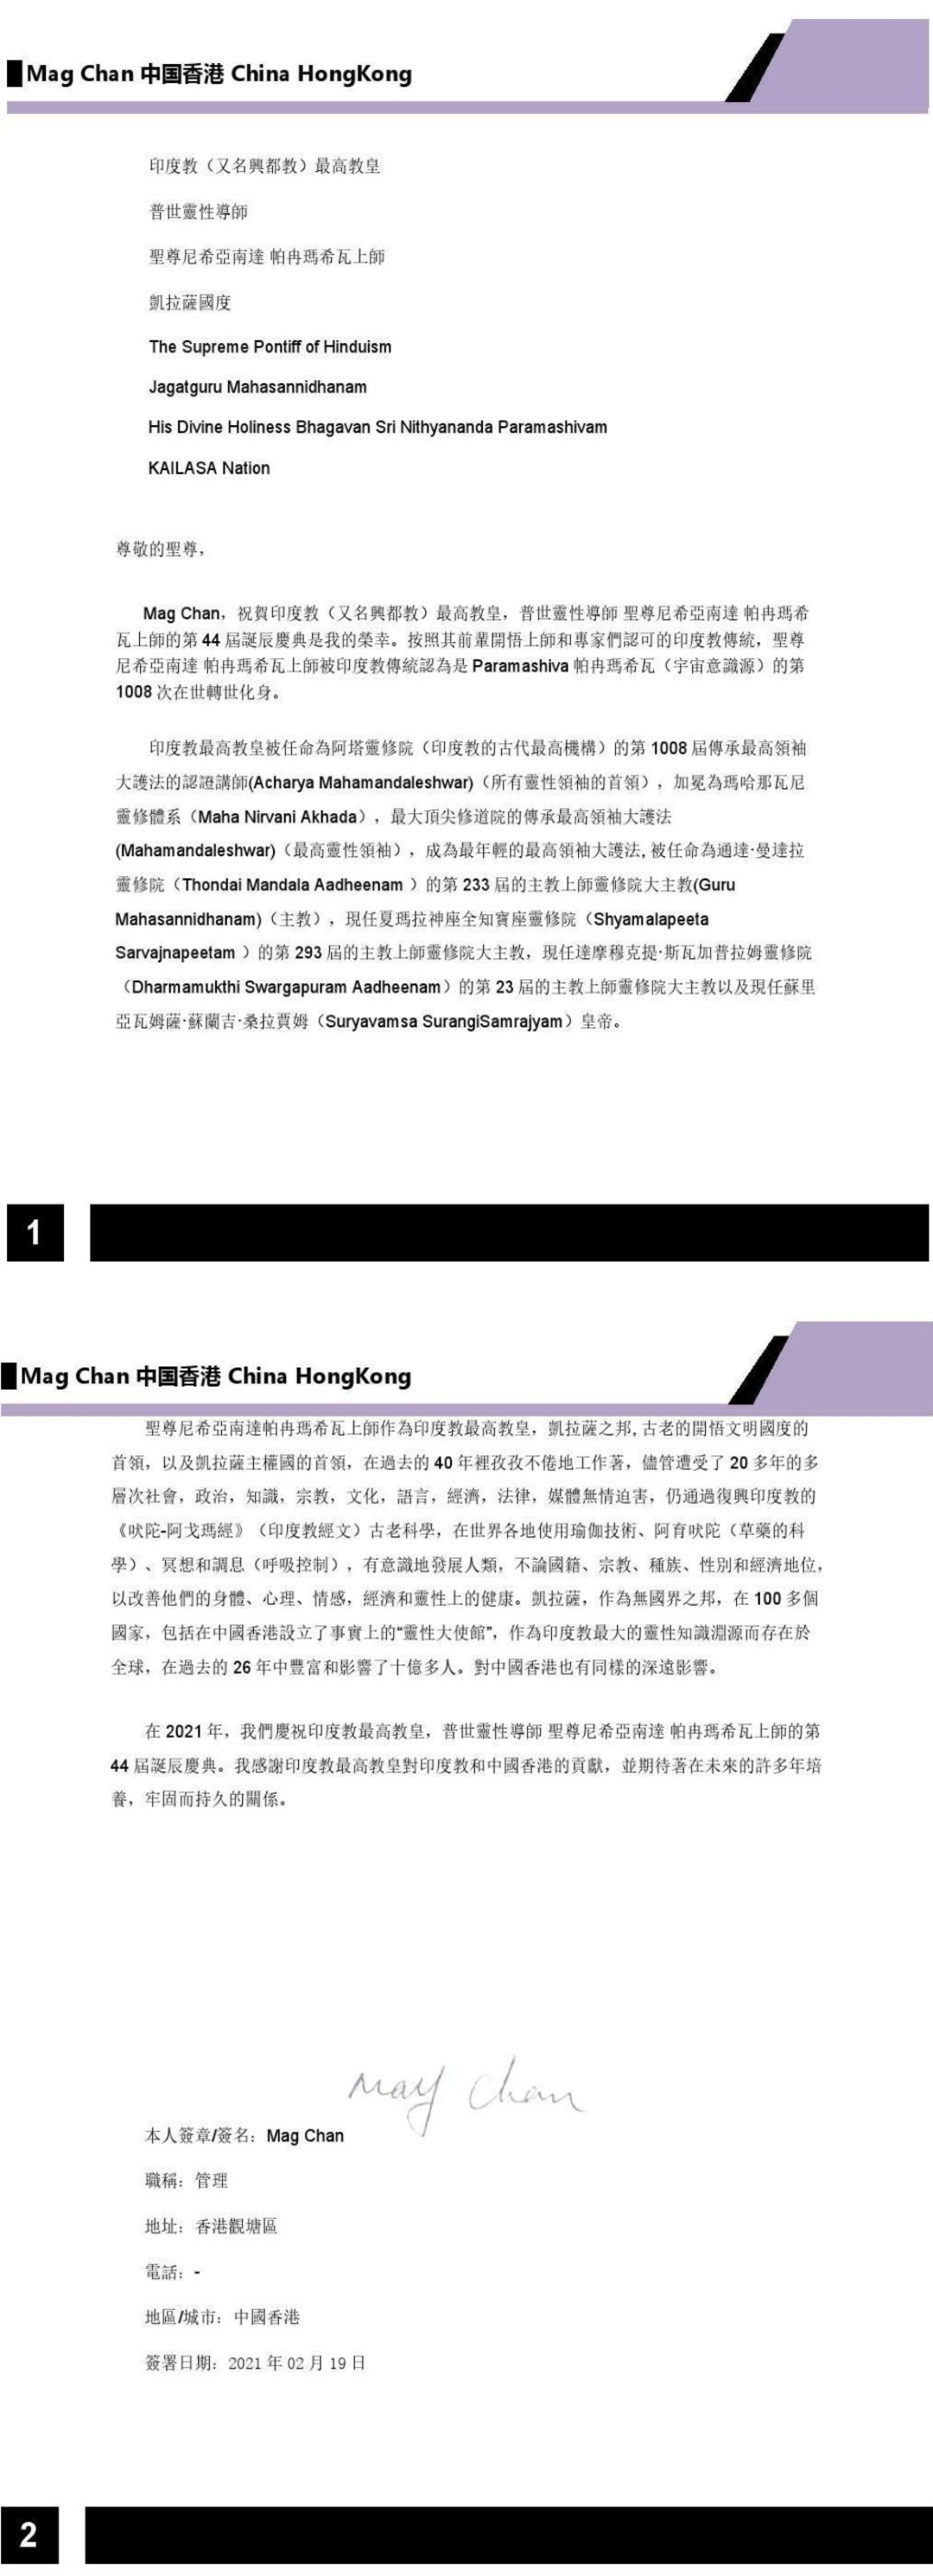 China---May-Chan---Feb-19--2021-(Proclamation)-14EuAcAkgvXQiza24sViBB6P1yXvmHPm2.pdf